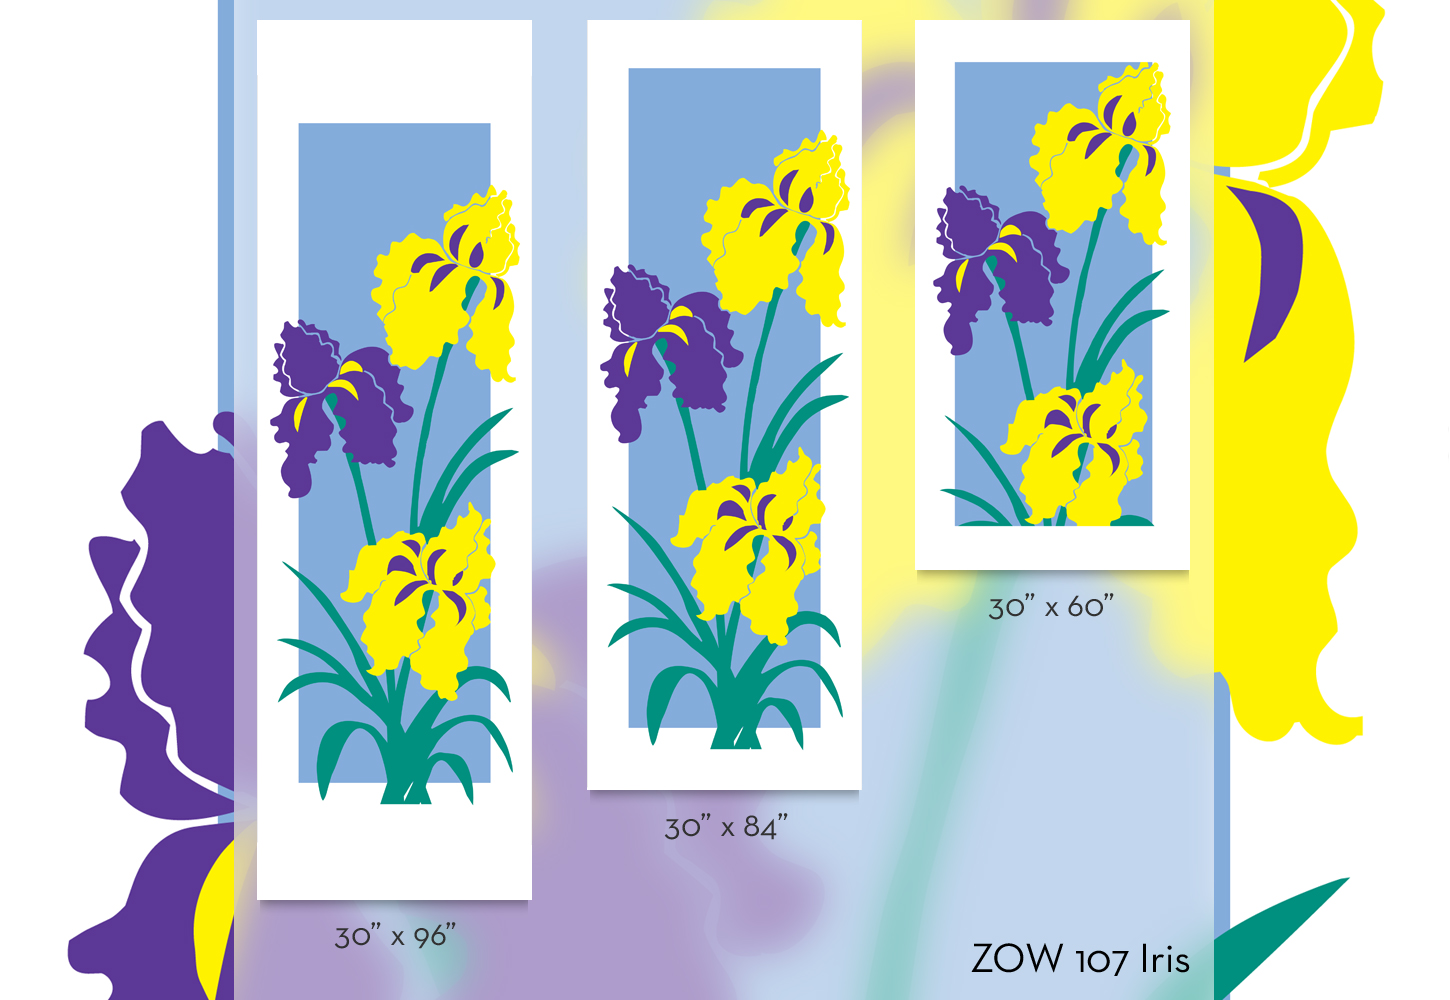 ZOW 107 Iris